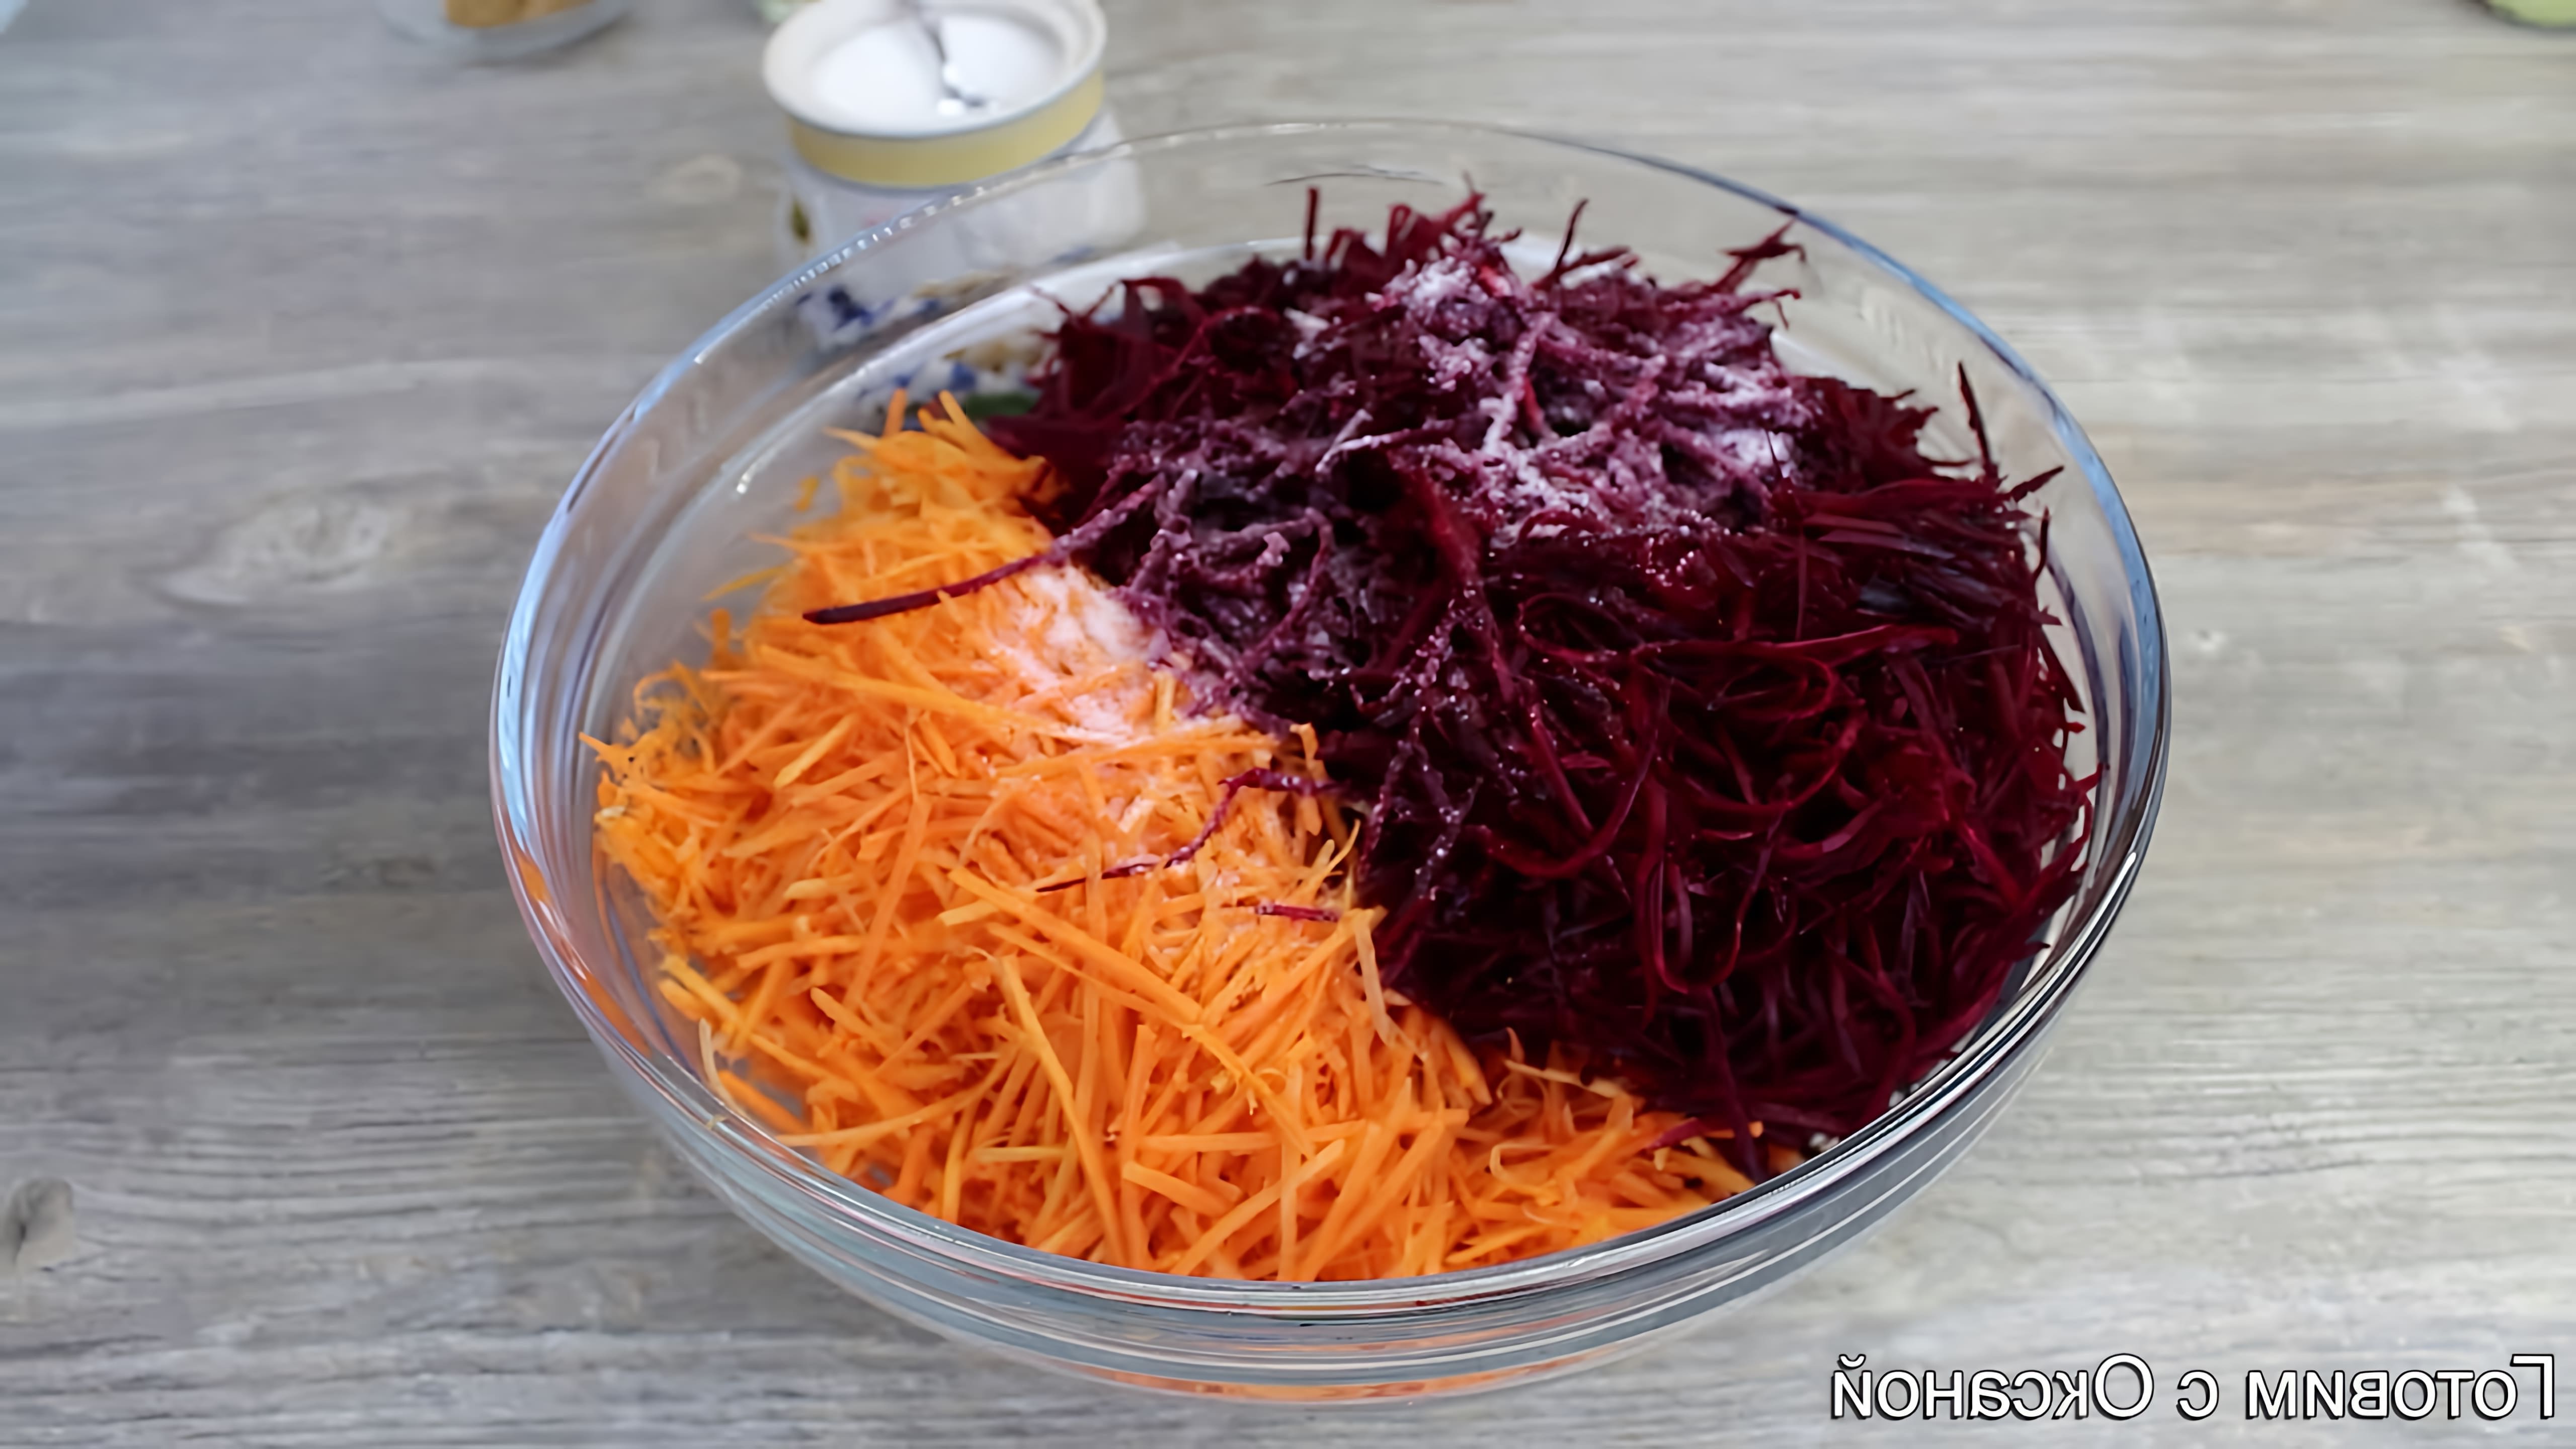 В этом видео демонстрируется процесс приготовления салата из свеклы и моркови по-корейски